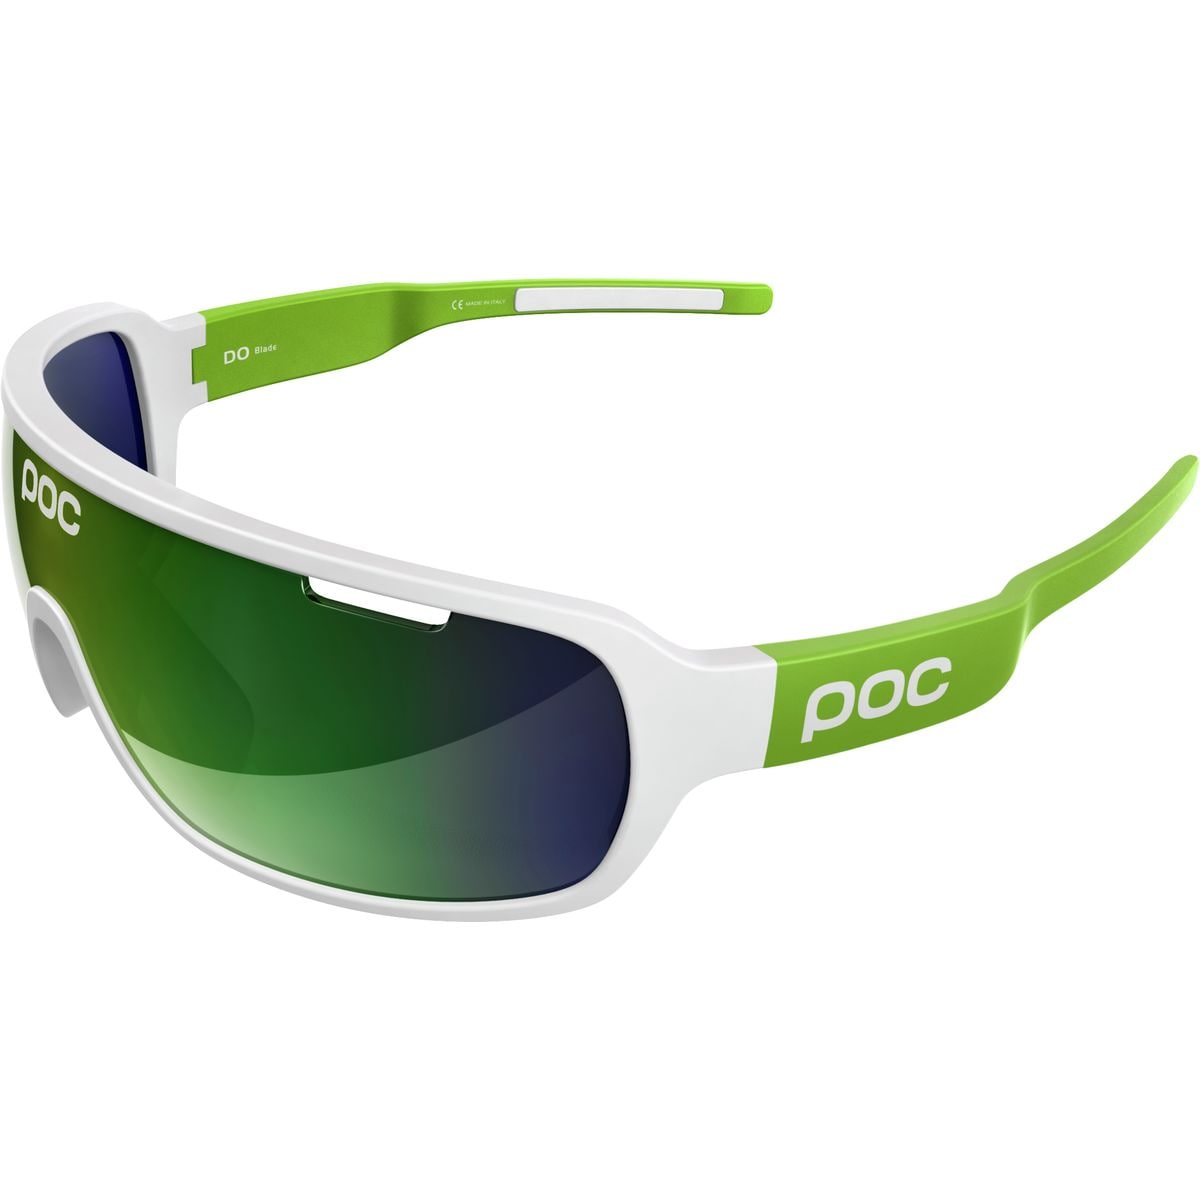 POC DO Blade Team Edition Sunglasses Mens